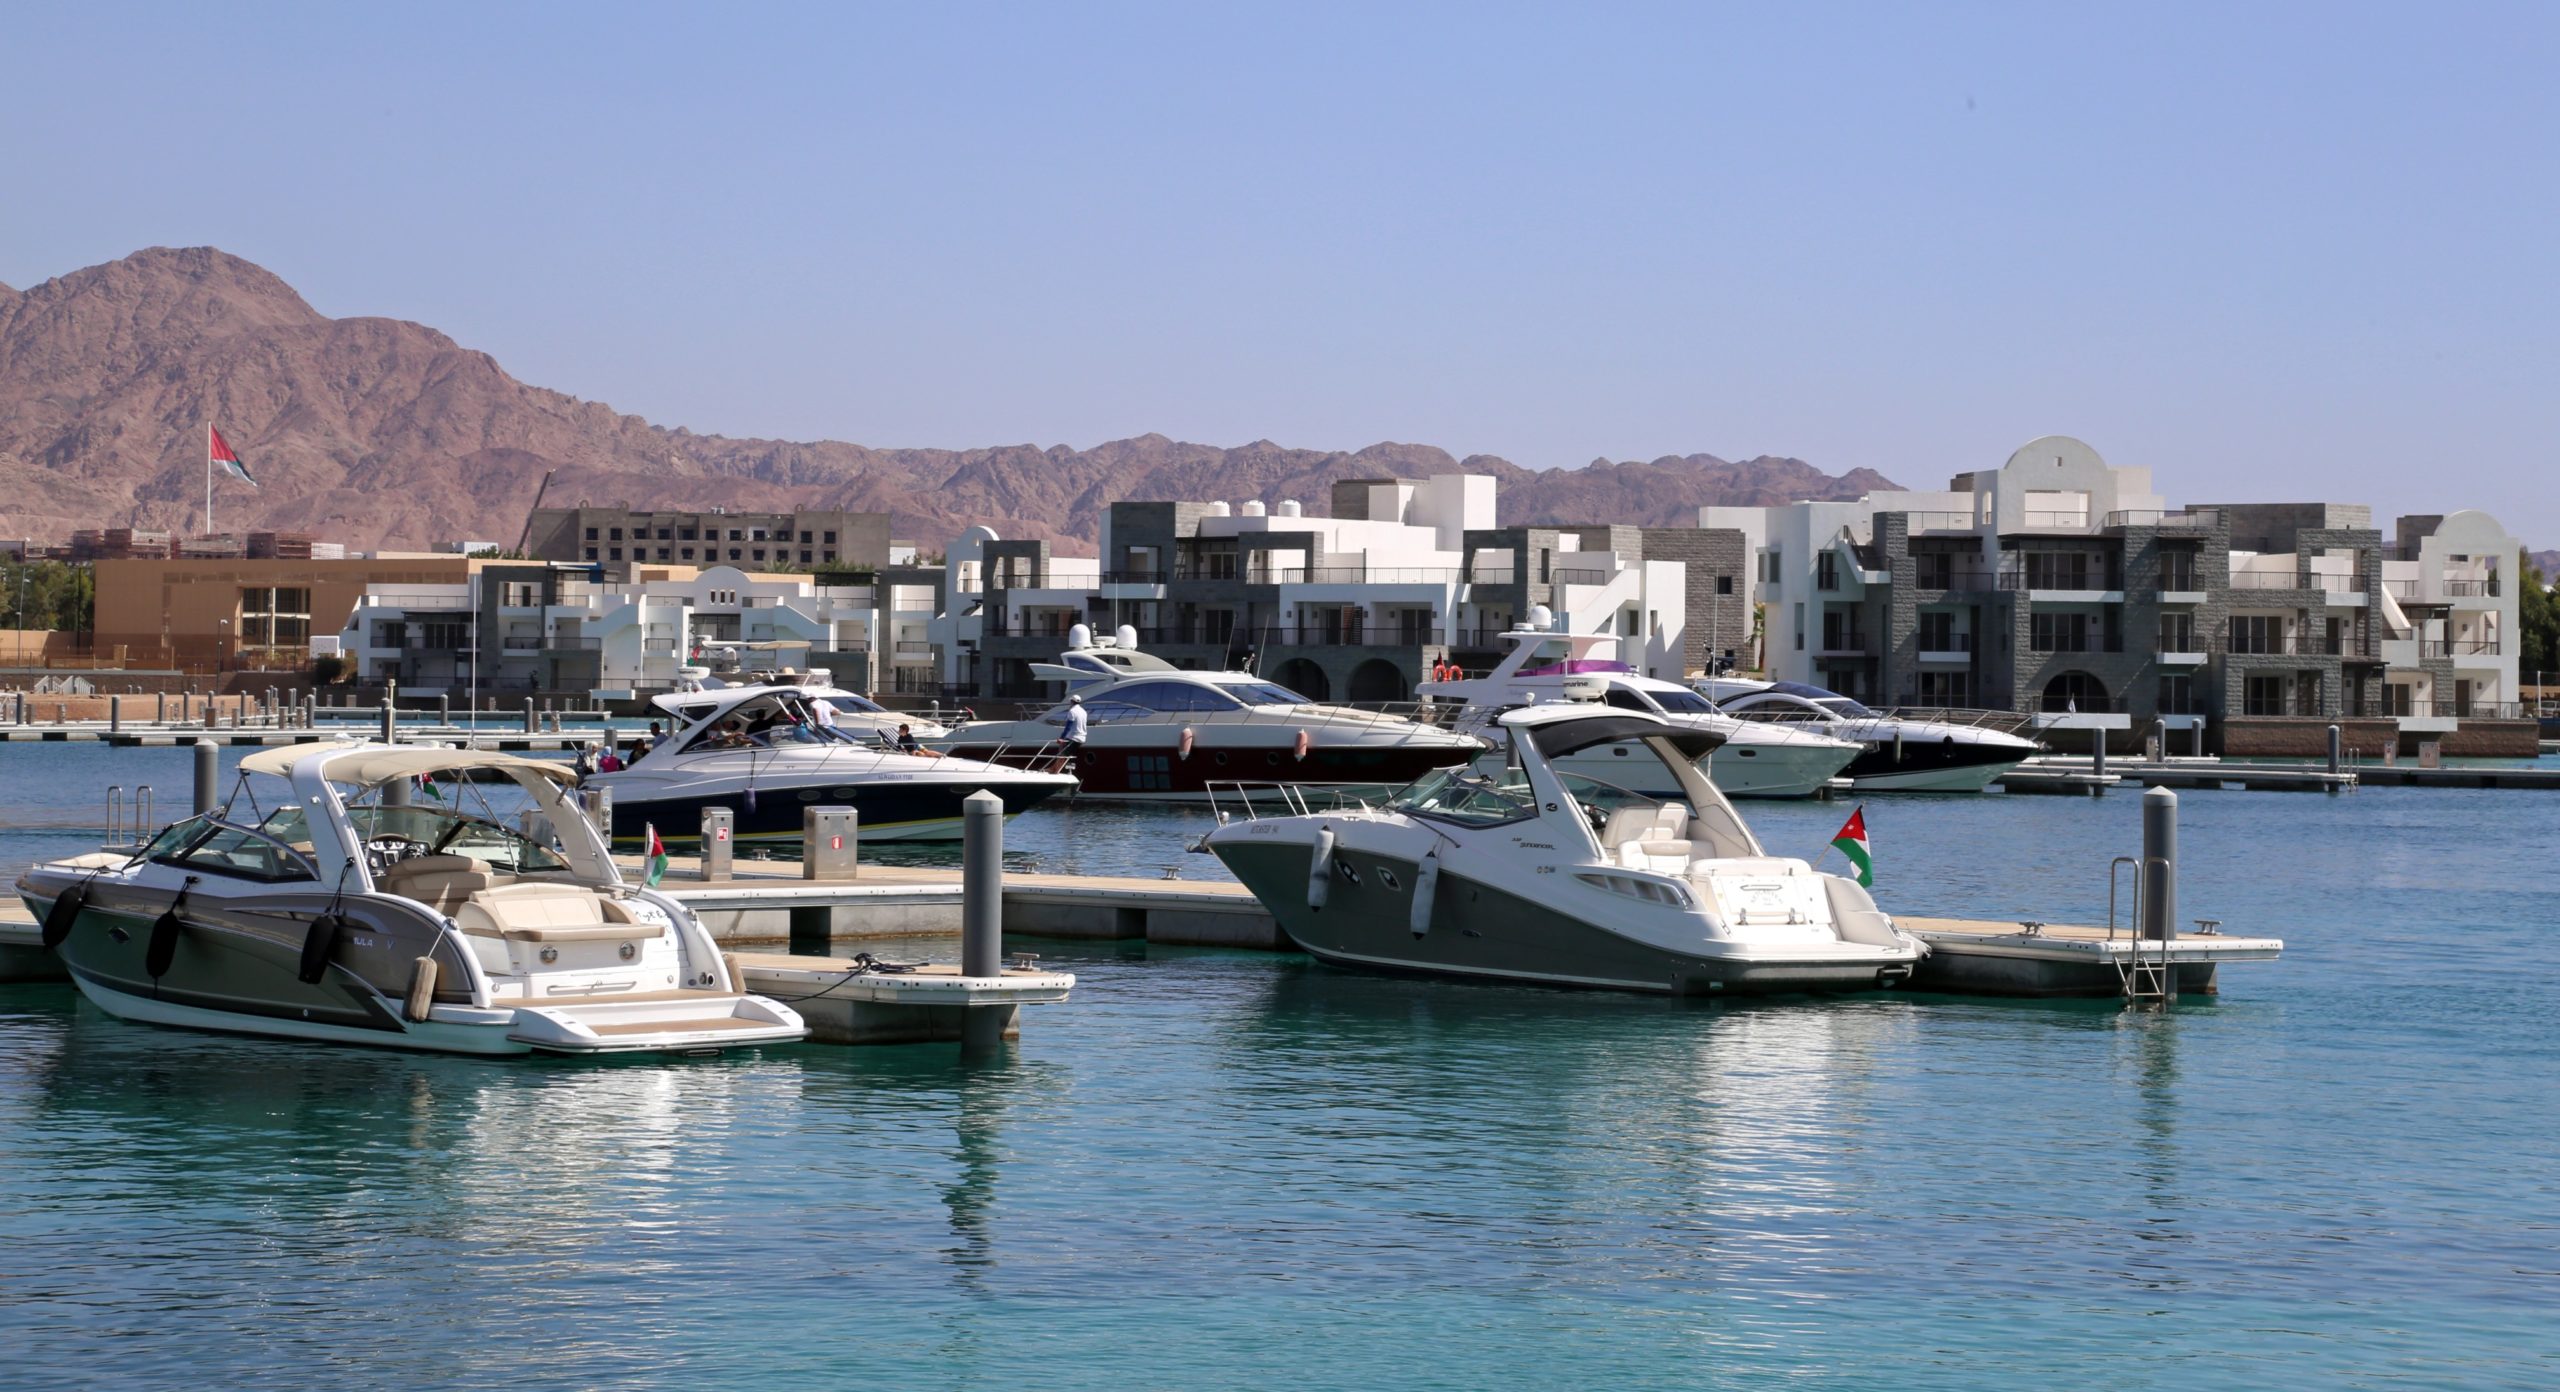 Ayla oasis marina yachts